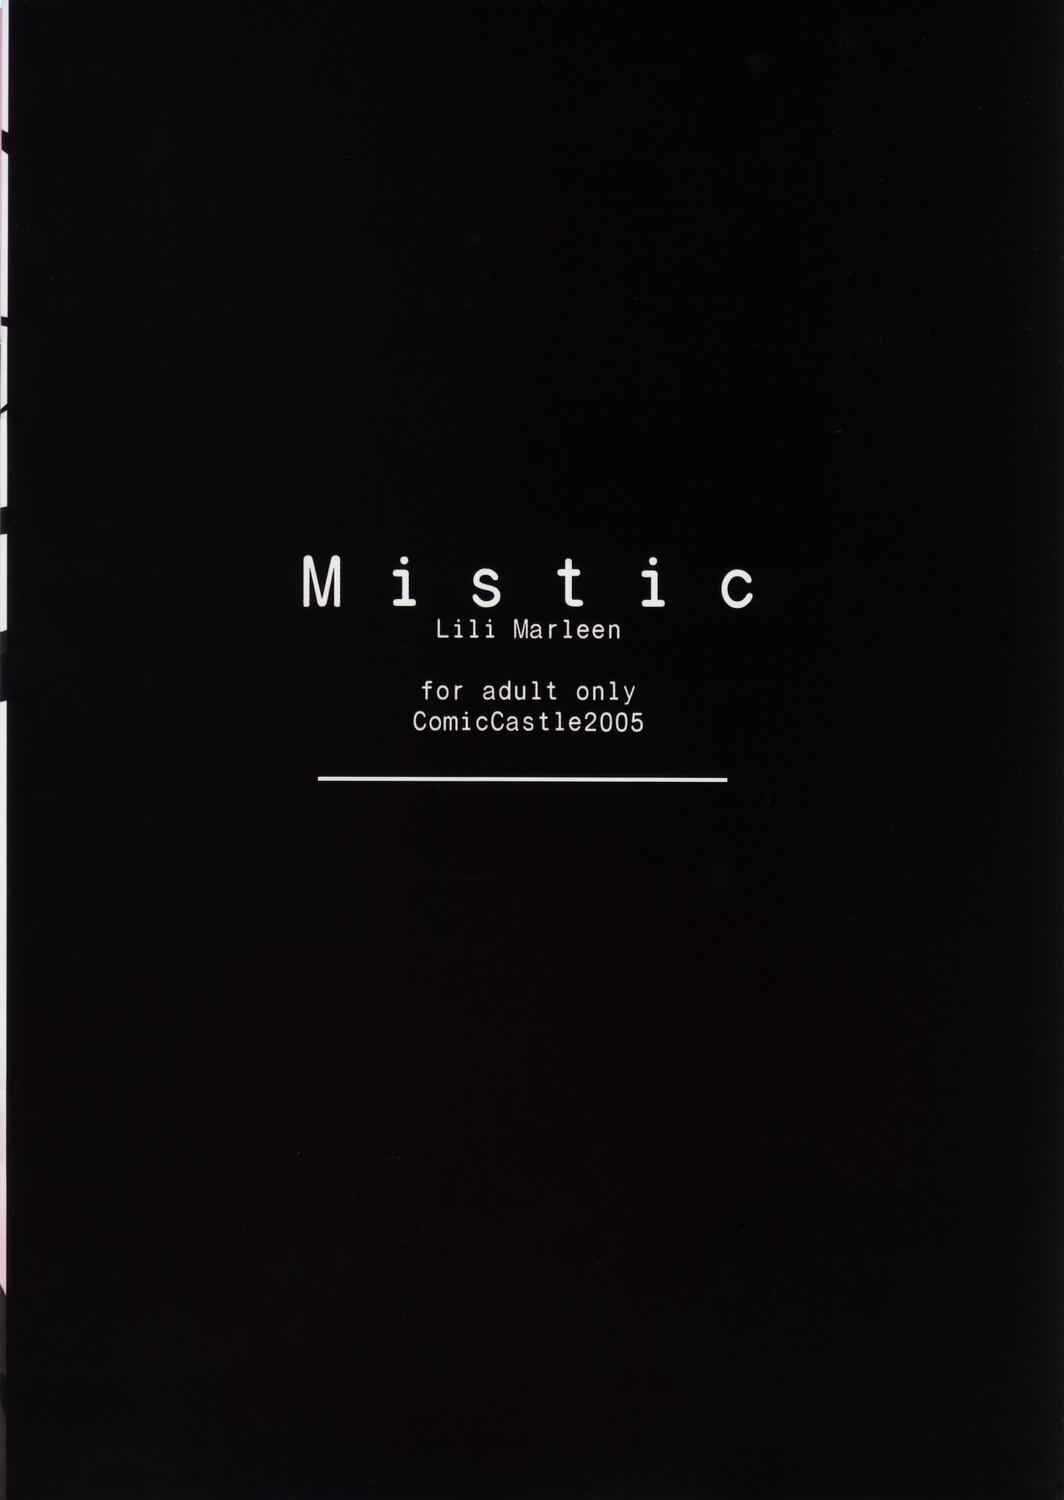 mistic 10